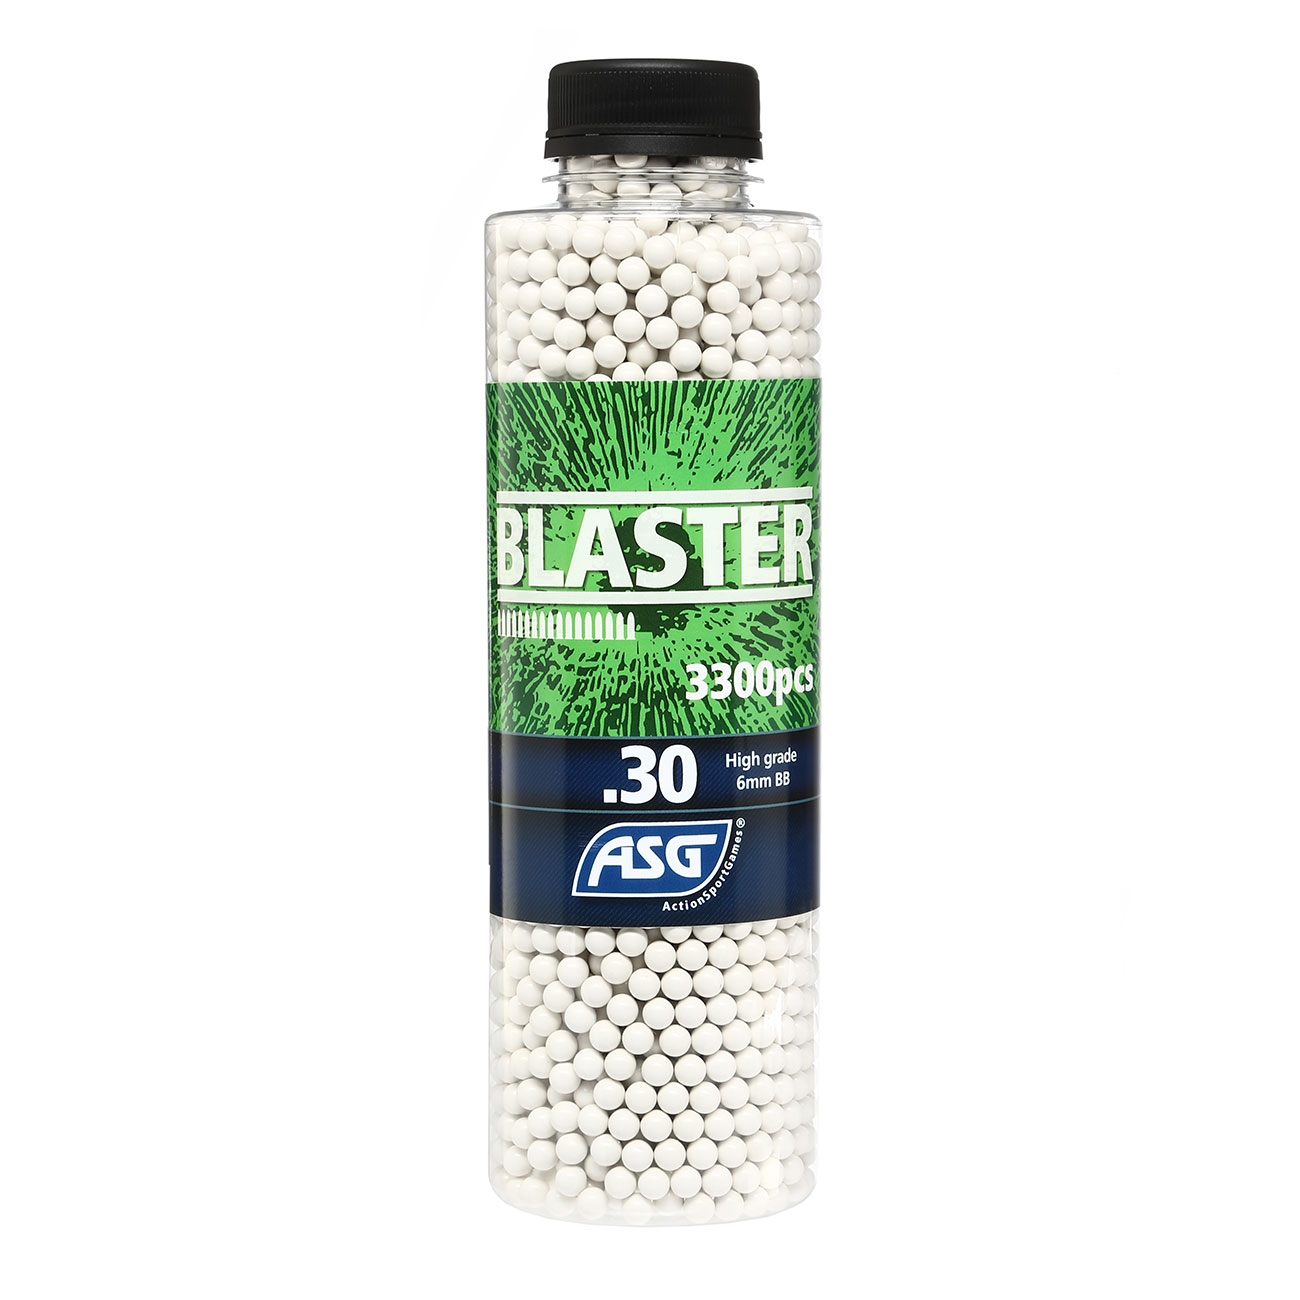 ASG Blaster High Grade BBs 0,30g 3.300er Flasche weiss